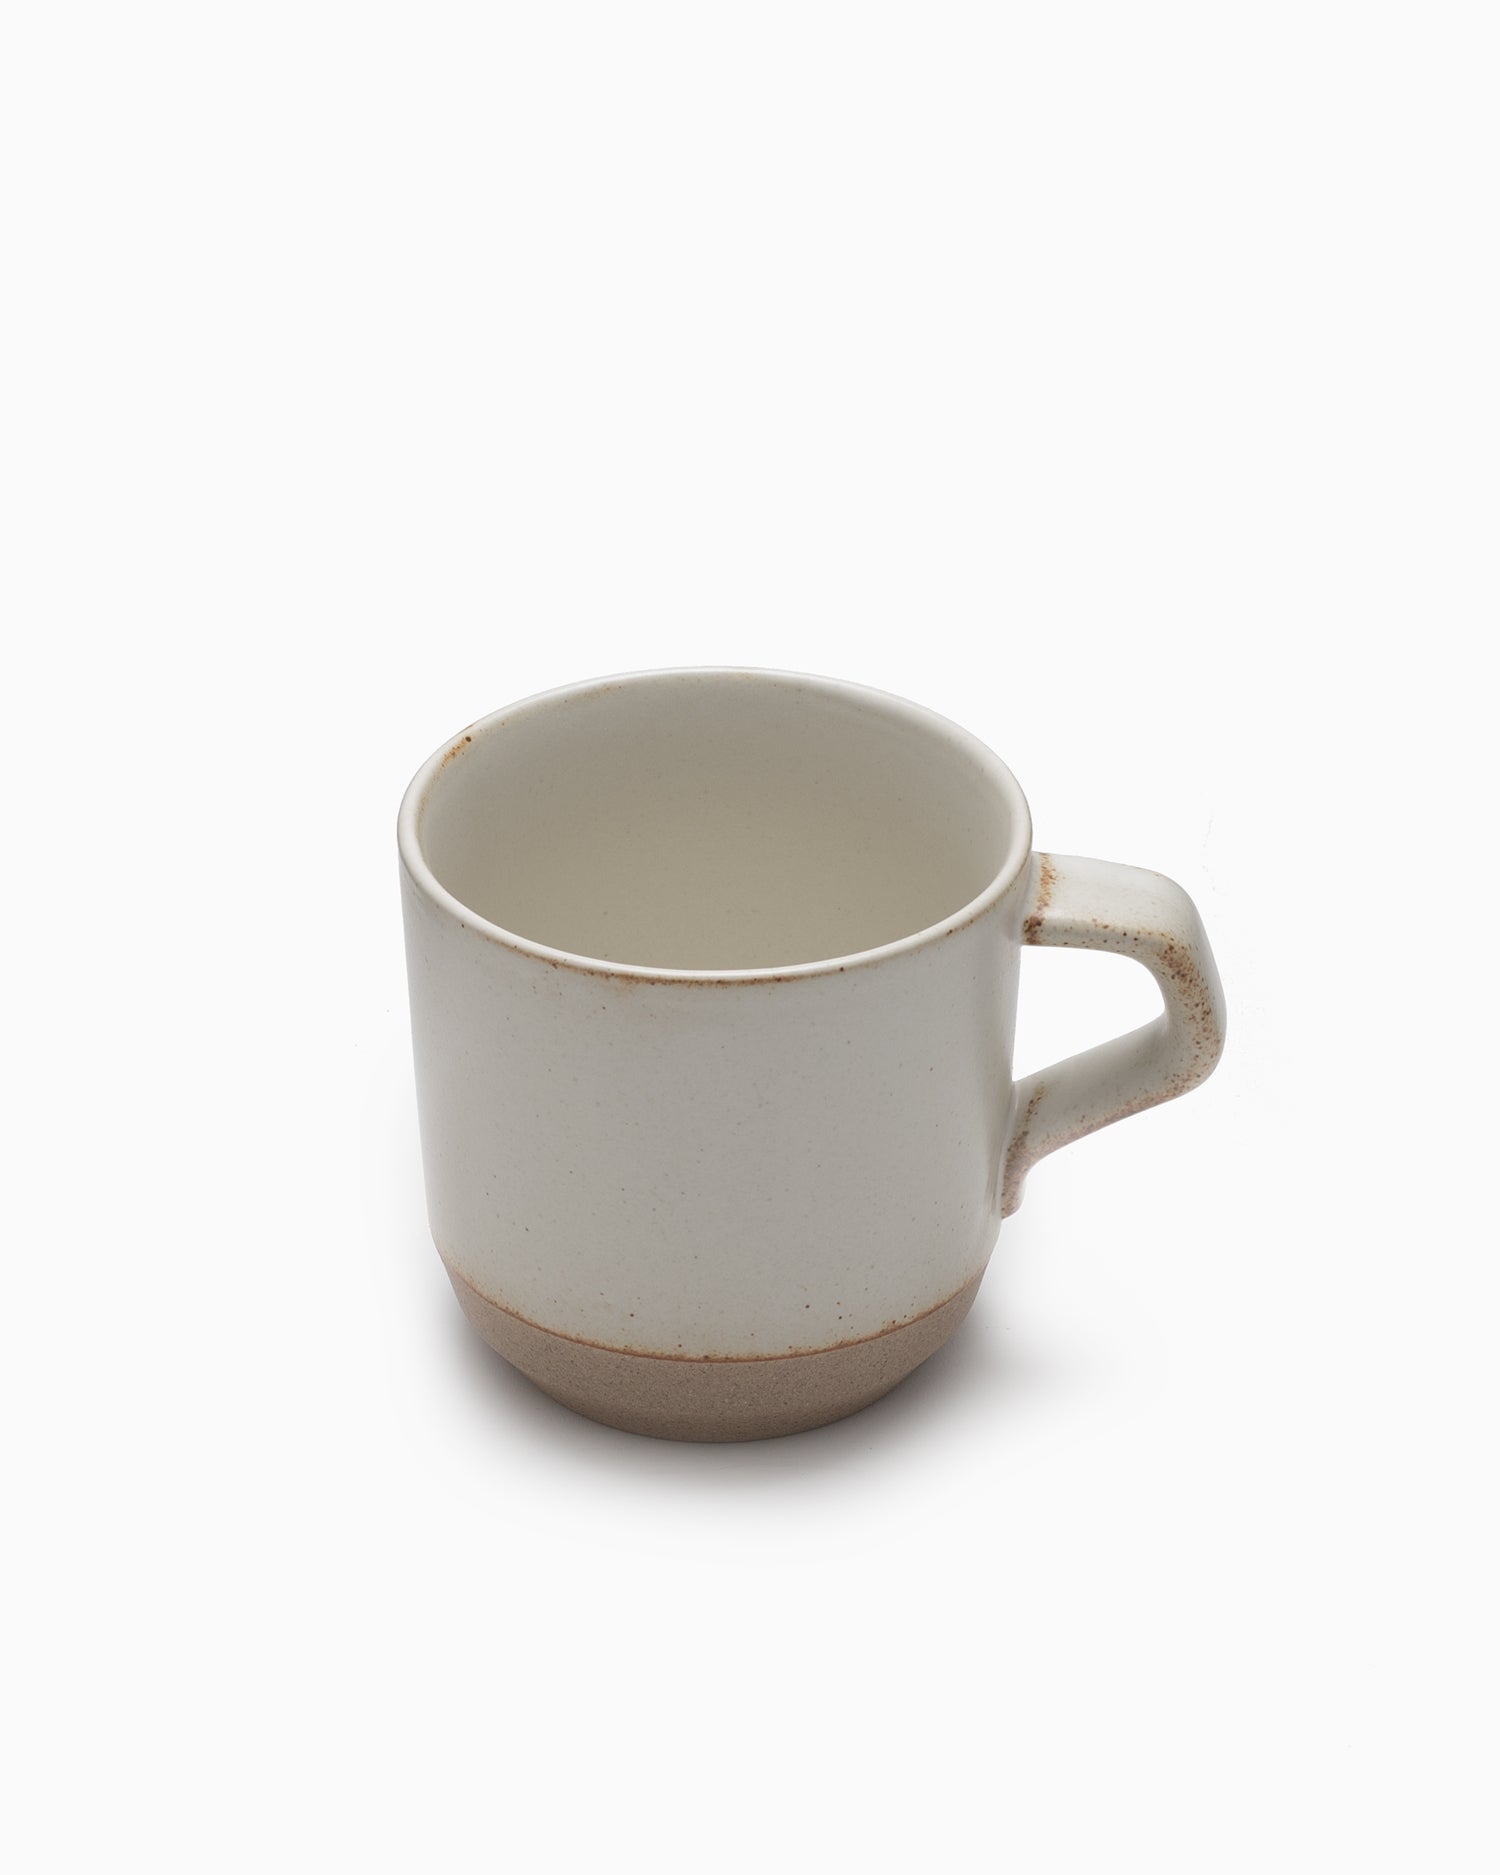 CLK-151 Small Mug - White